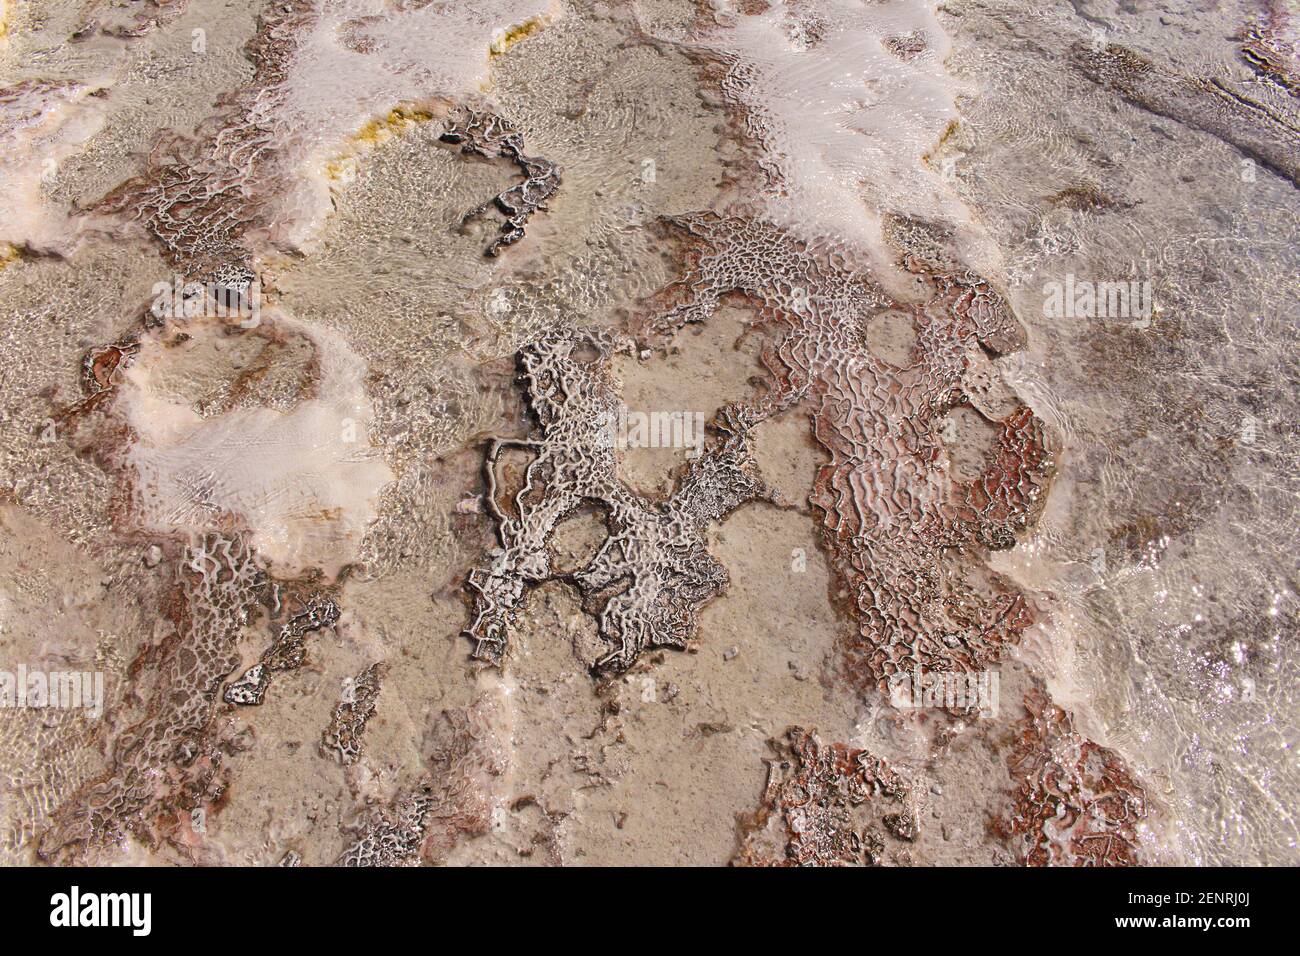 Kalkstein Textur mit Wasser. Ein altes Fossil. Seeufer. Pamukkale, Türkei. Natürlicher Hintergrund Stockfoto